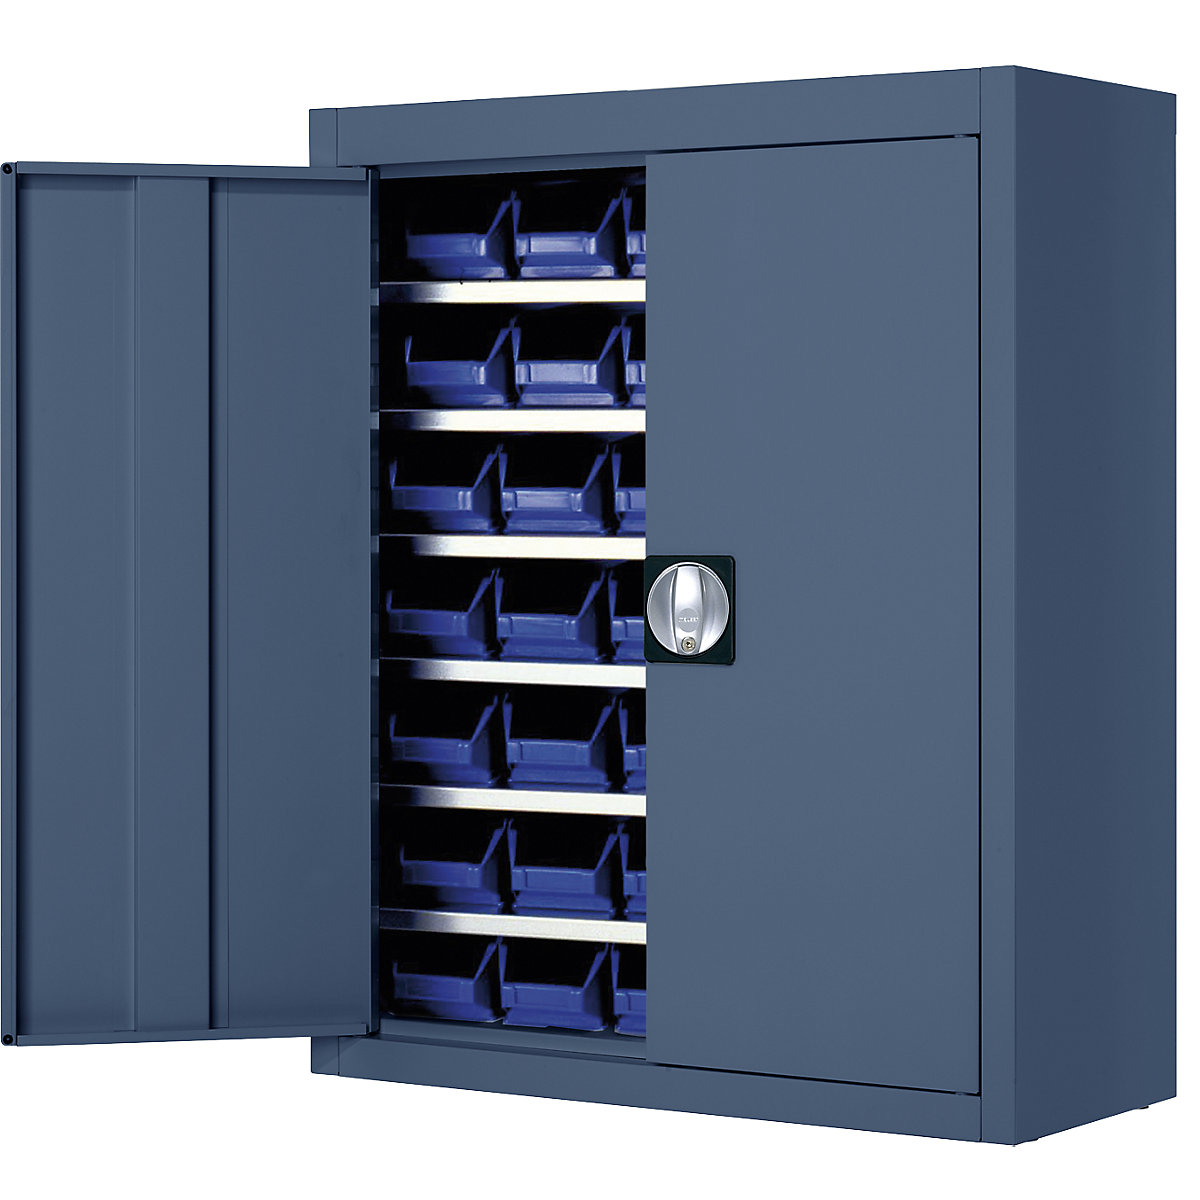 Skladová skříň s přepravkami s viditelným obsahem – mauser, v x š x h 820 x 680 x 280 mm, jednobarevné, modrá, 42 přepravek-5